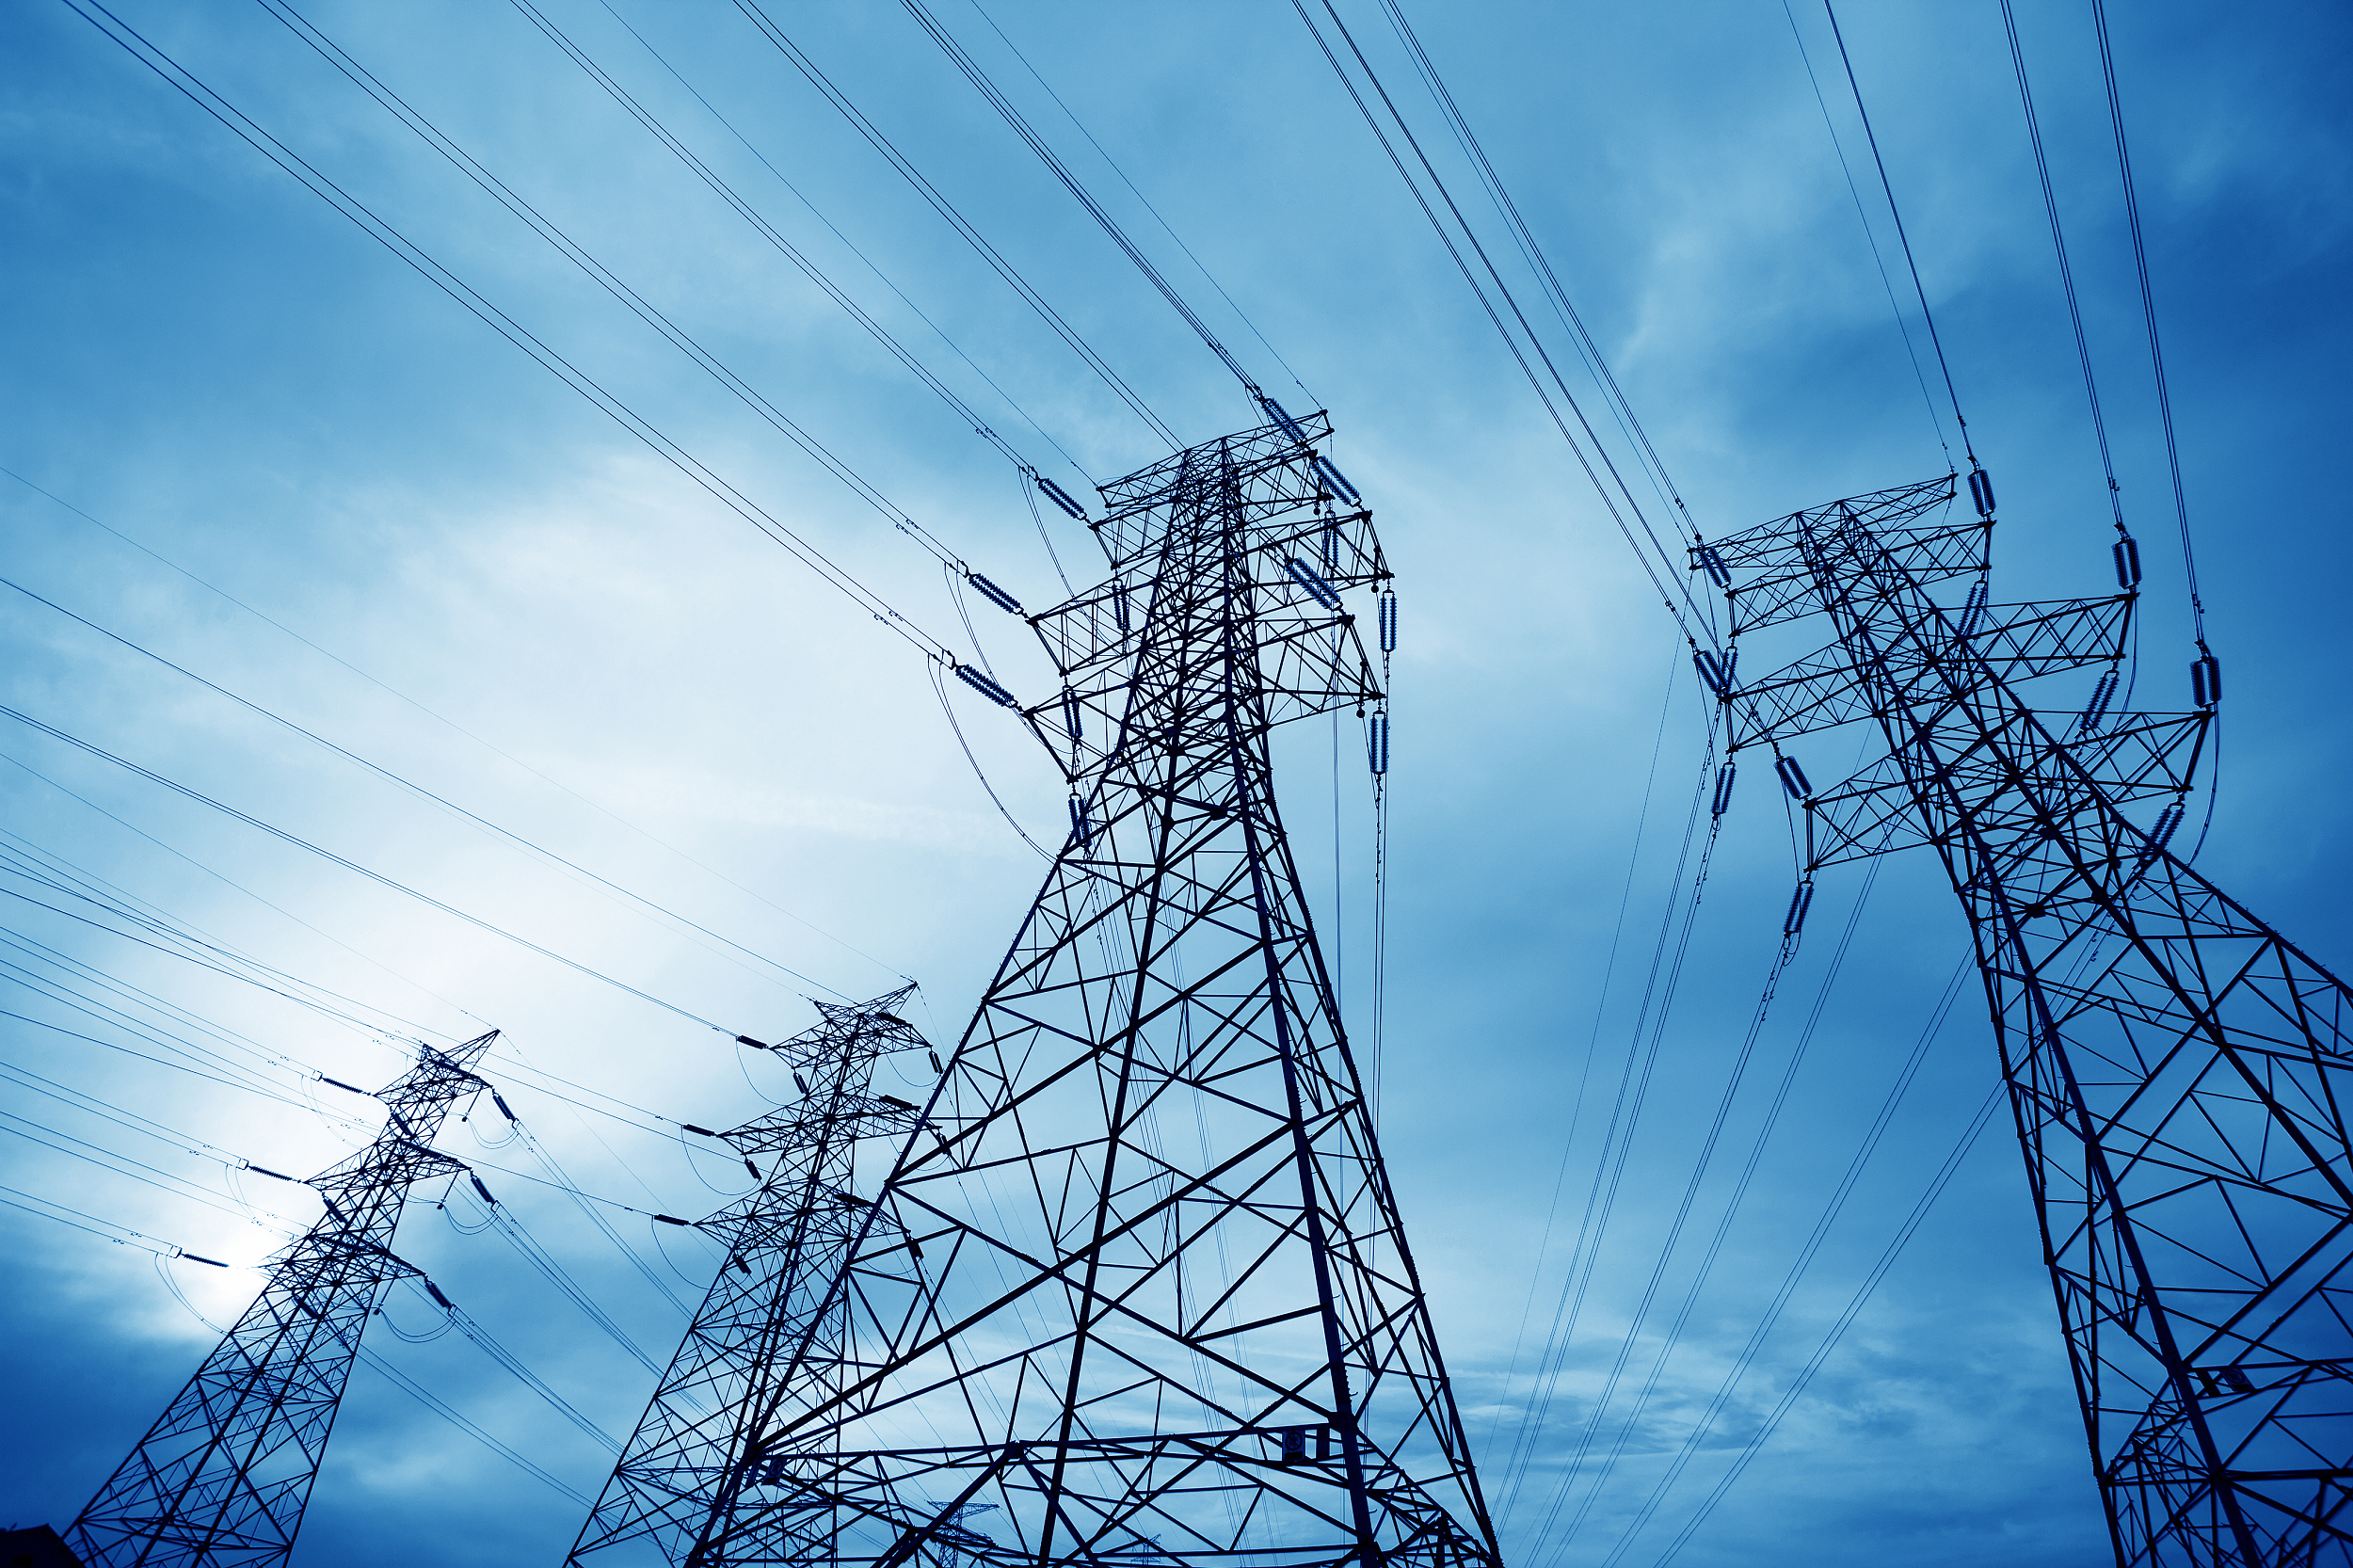 9月27日下午,国家电网公司表示,针对当前供电形势,将综合施策,多措